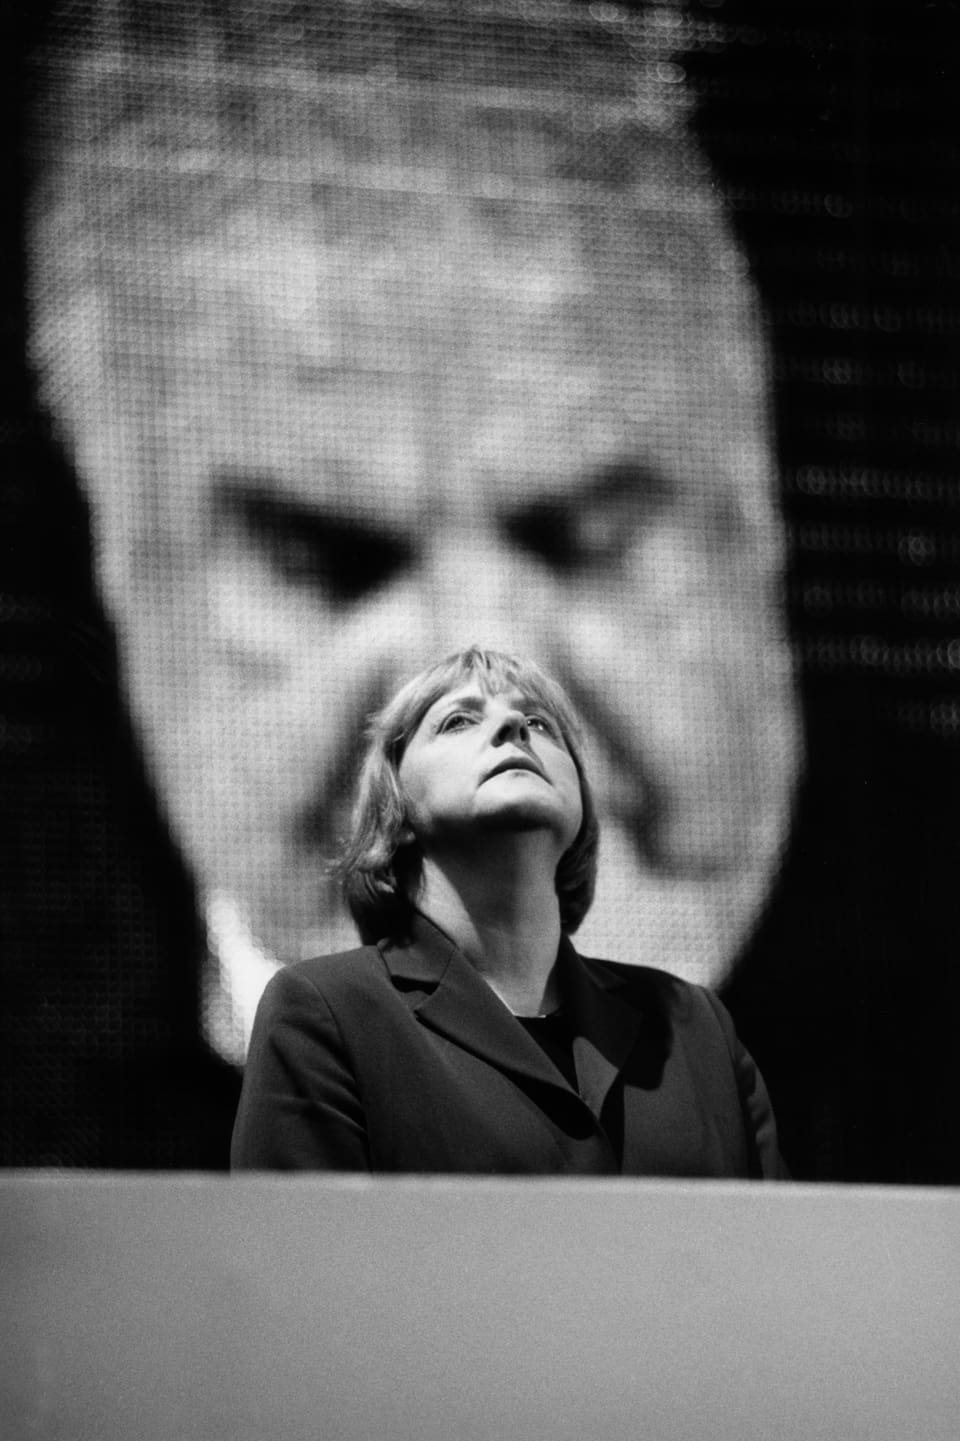 Ein Porträt von Angela Merkel, die vor einer grossen Videoprojektion mit dem Gesicht Helmut Kohls steht. 